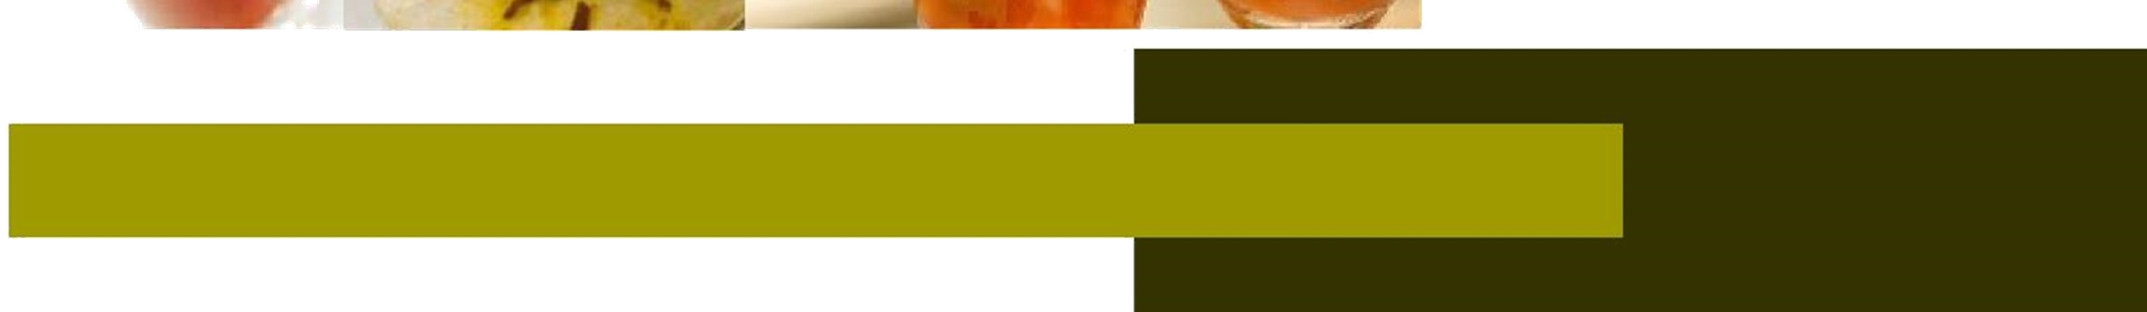 COFFEE BREAK ESPECIAL DE PÁSCOA R$ 40,00 por pessoa Alimentos Pastel de bacalhau Folhado de palmito Finger no pão de uva passas e canela com copa lombo e picles Colomba pascal de frutas Mini ovos de